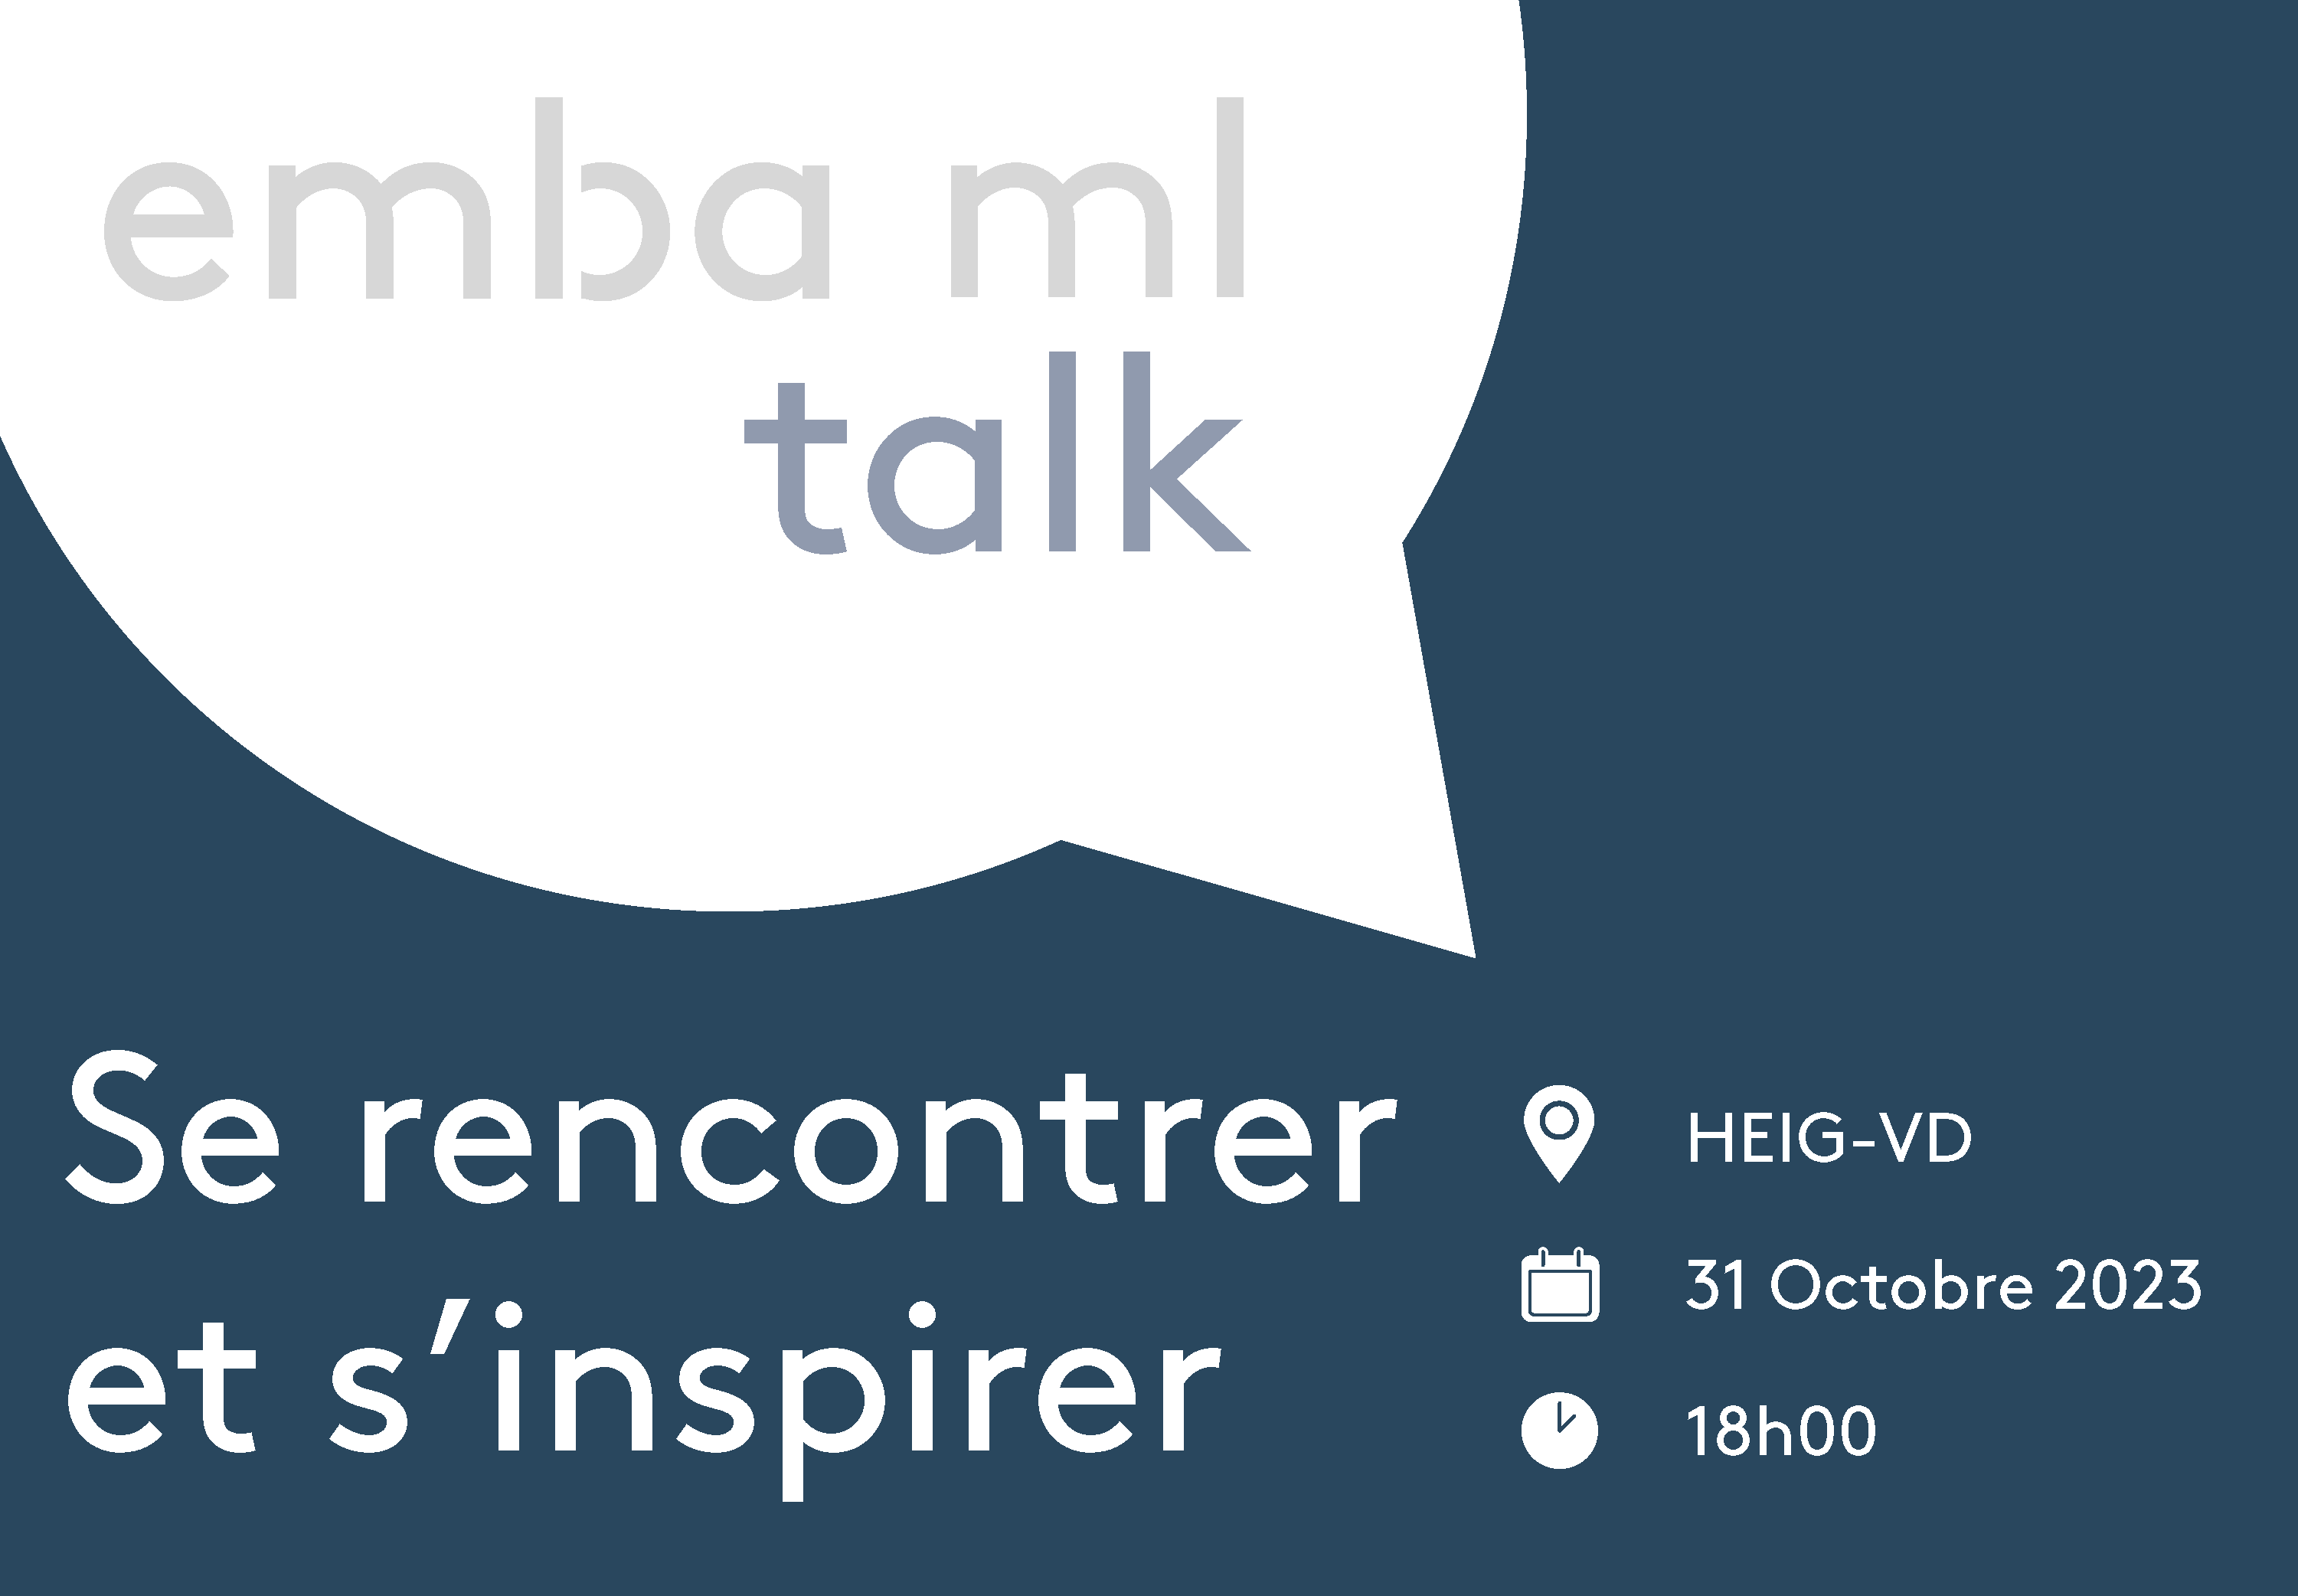 EMBA ML Talk - Se rencontrer et s'inspirer